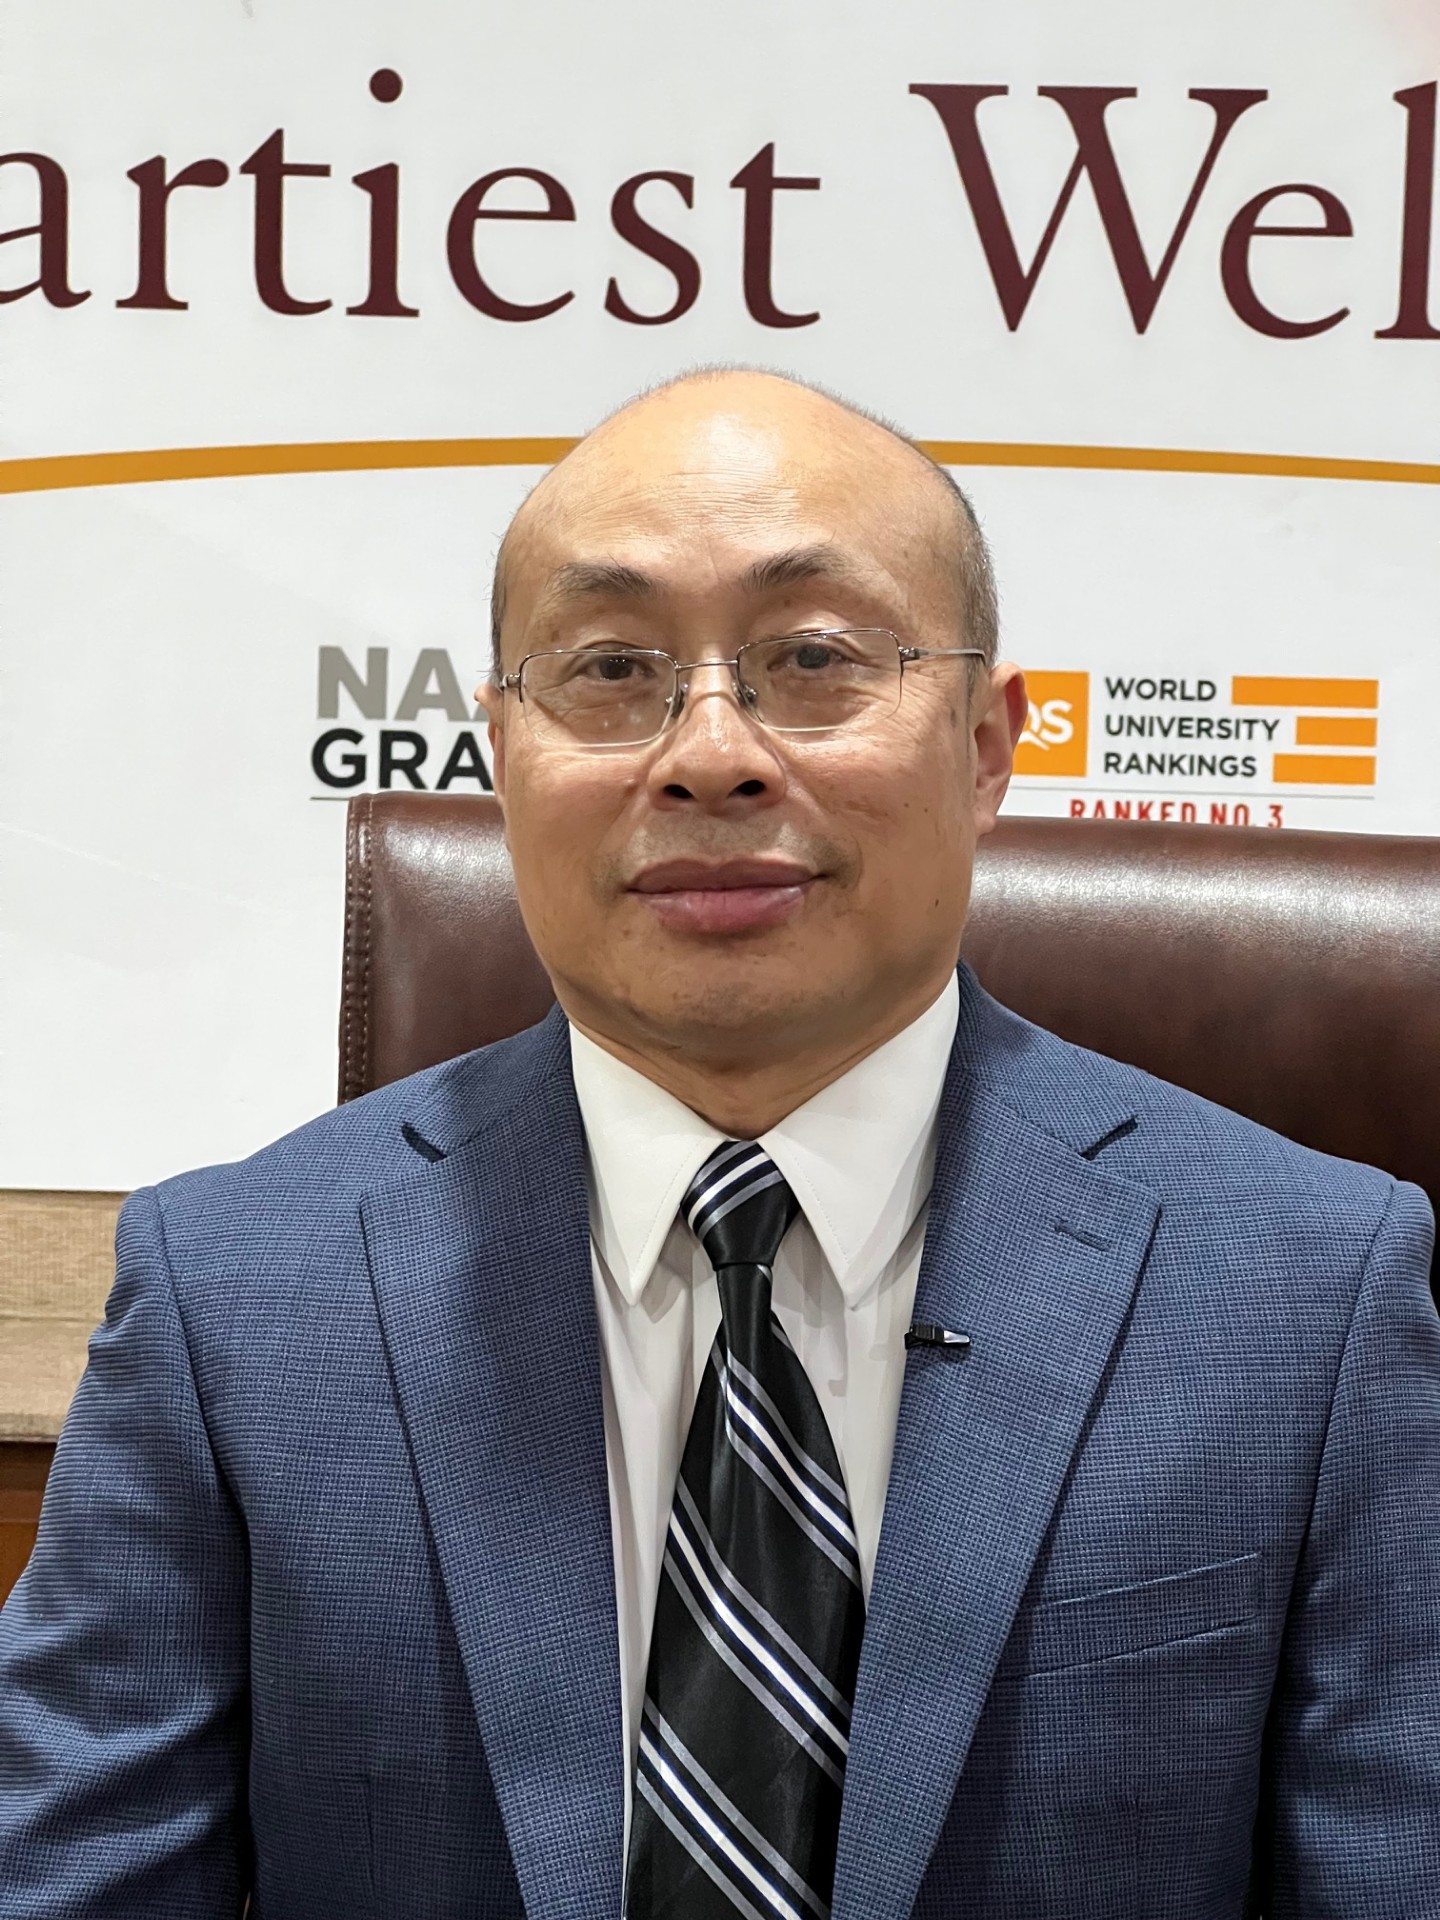 Dr. Simon Xu